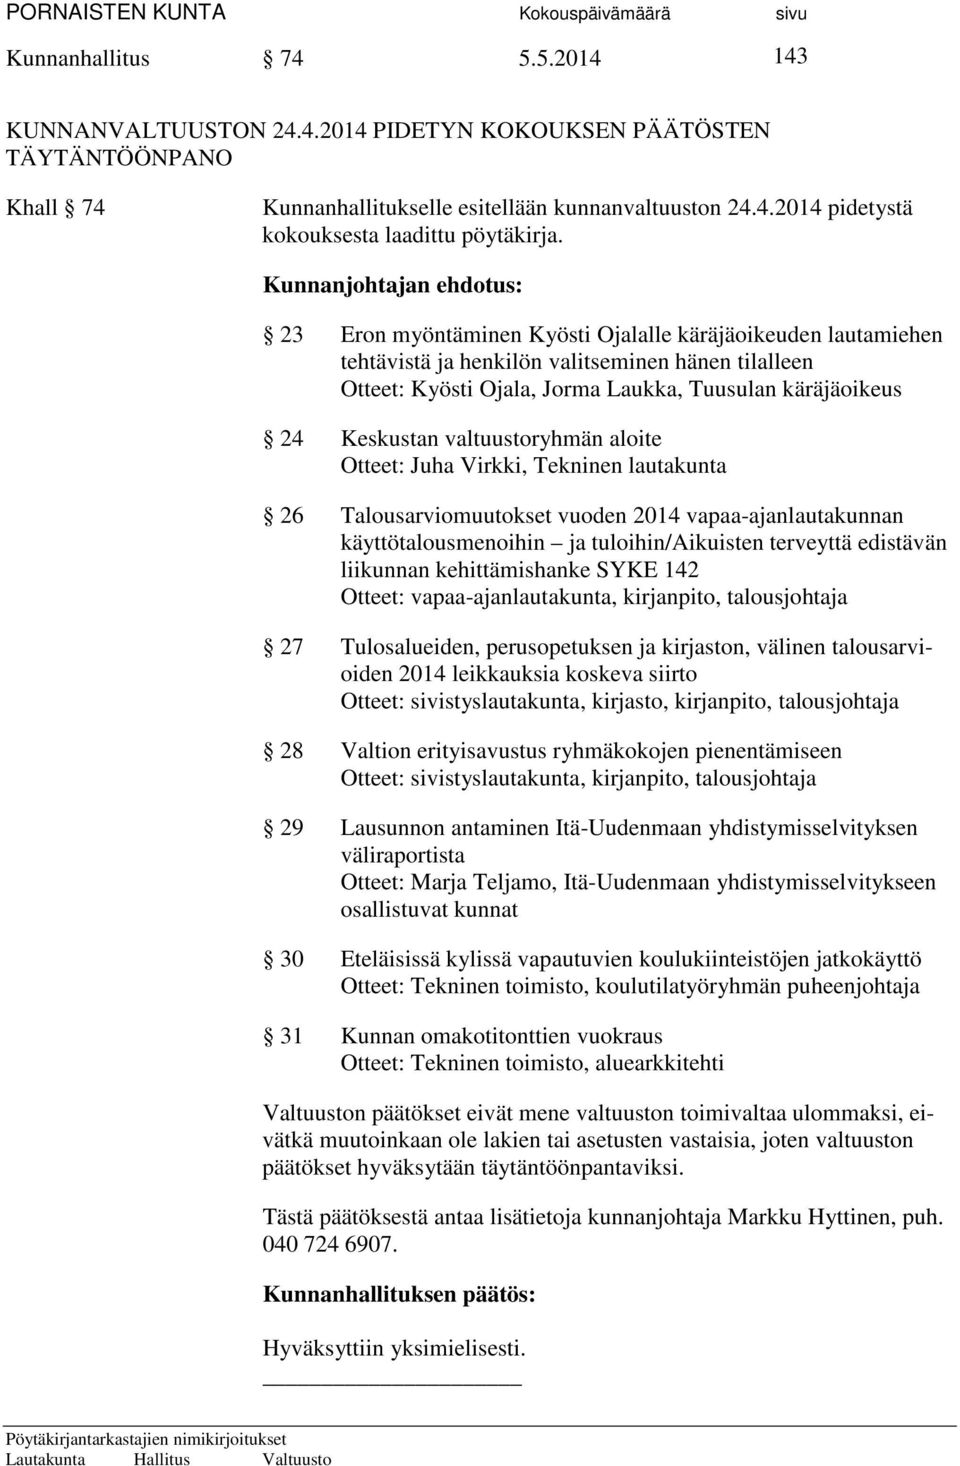 Keskustan valtuustoryhmän aloite Otteet: Juha Virkki, Tekninen lautakunta 26 Talousarviomuutokset vuoden 2014 vapaa-ajanlautakunnan käyttötalousmenoihin ja tuloihin/aikuisten terveyttä edistävän